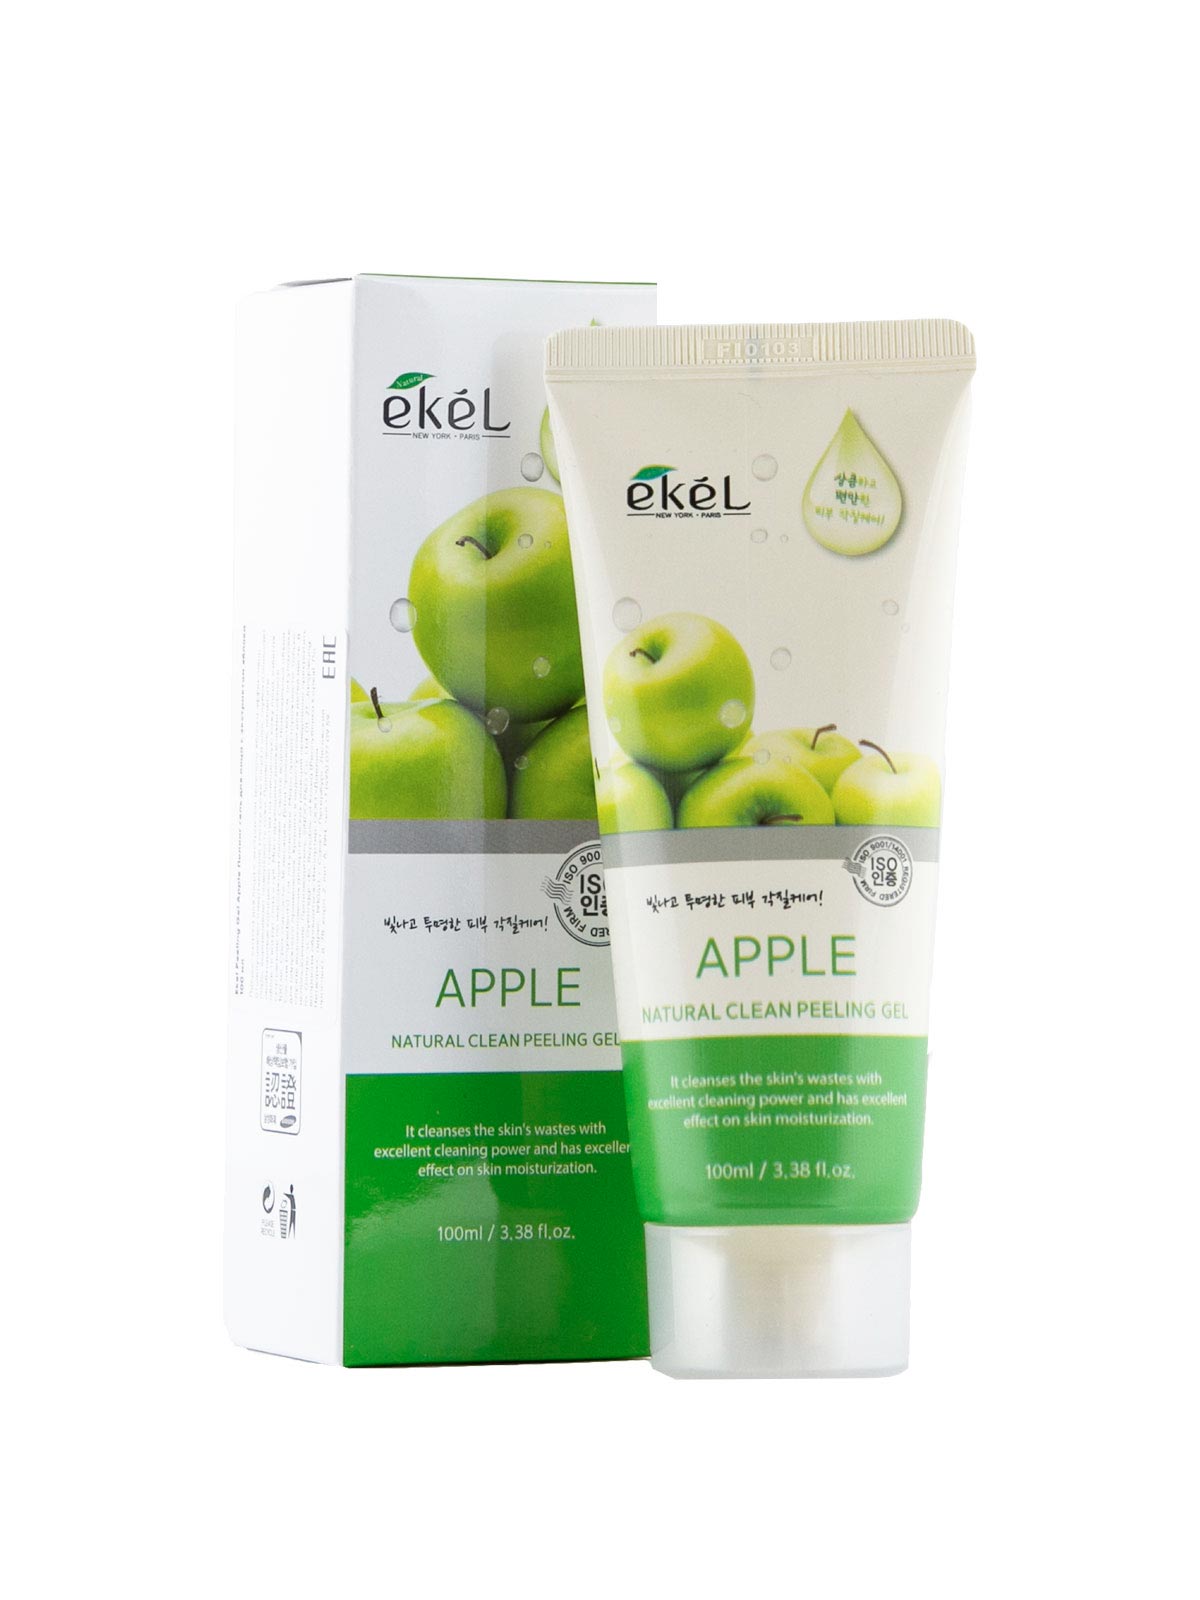 Apple gel. Ekel natural clean peeling Gel Apple пилинг-скатка с экстрактом яблока 100мл. Пилинг гель natural clean peeling Gel 100ml (Ekel). Пилинг скатки Ekel 100 мл. Ekel гель пилинг Ekel яблоко.